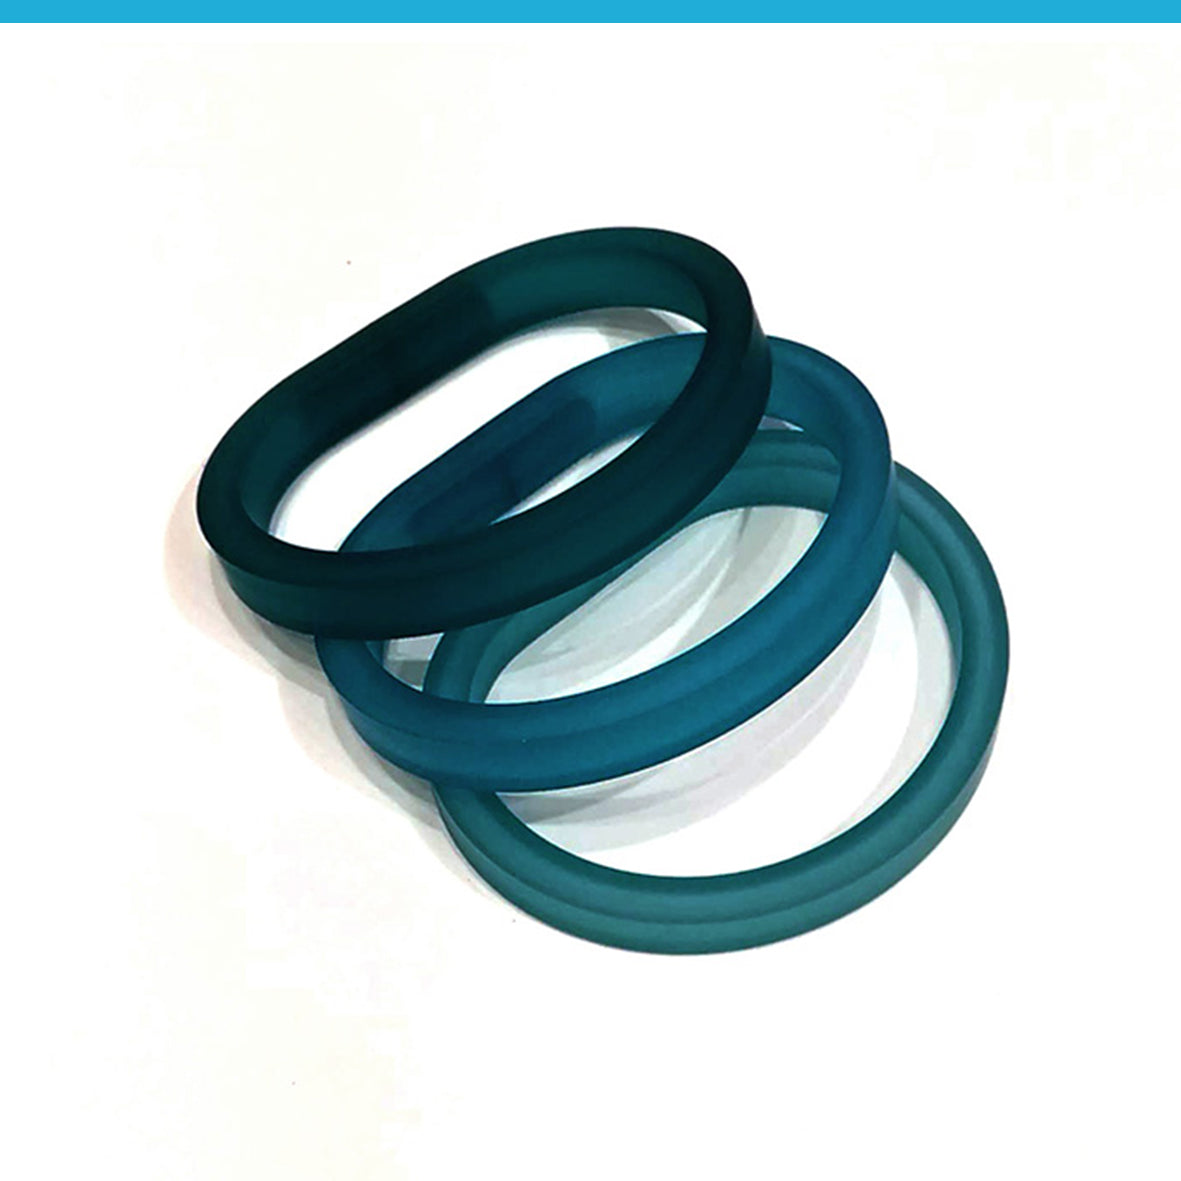 Drim Trio set of 3 rubber bracelets | 8 colors available